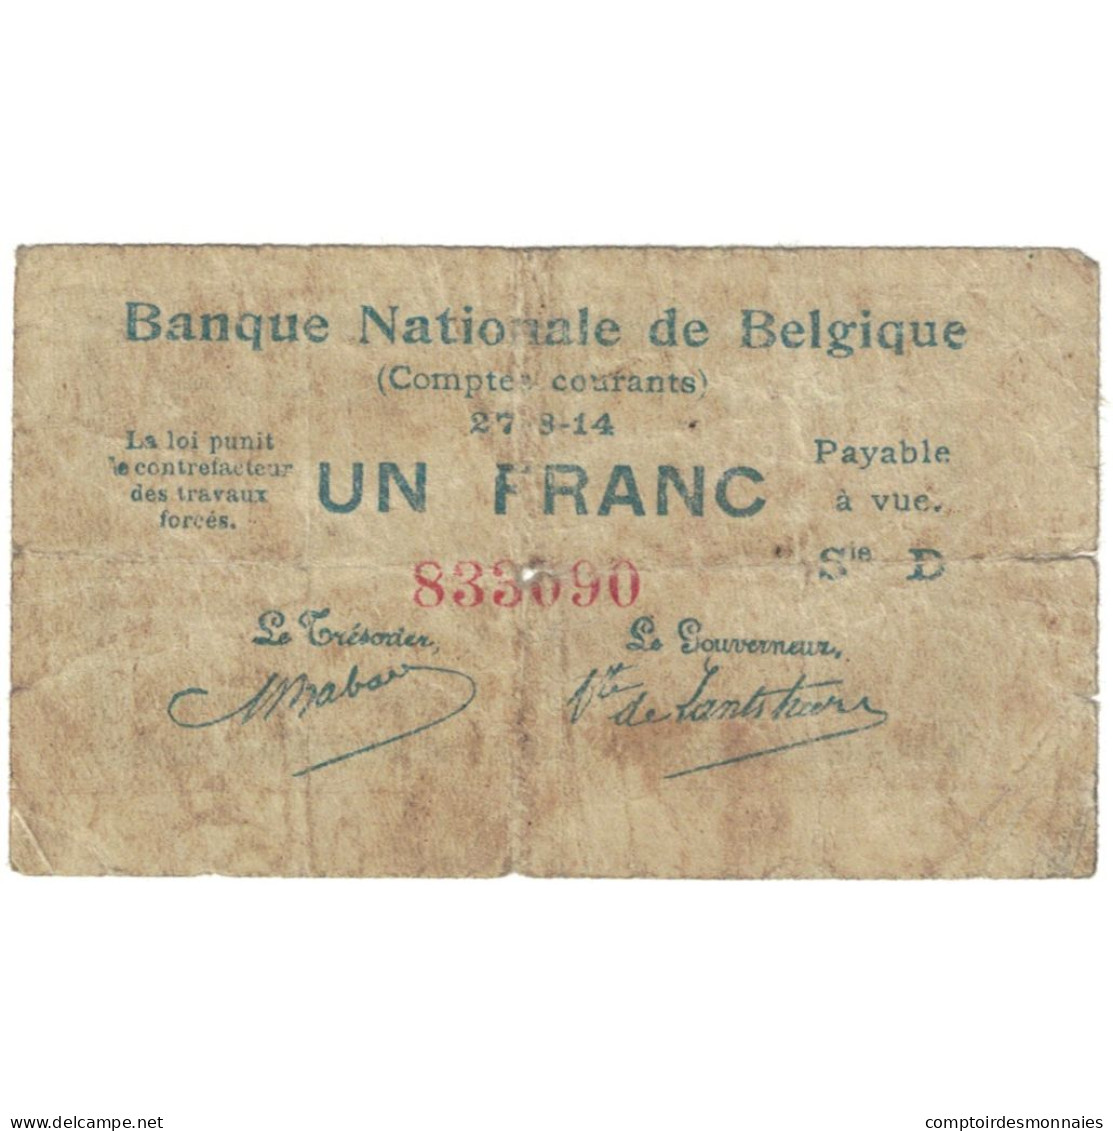 Billet, Belgique, 1 Franc, 1914, 1914-08-27, KM:81, TB - 1-2 Franchi